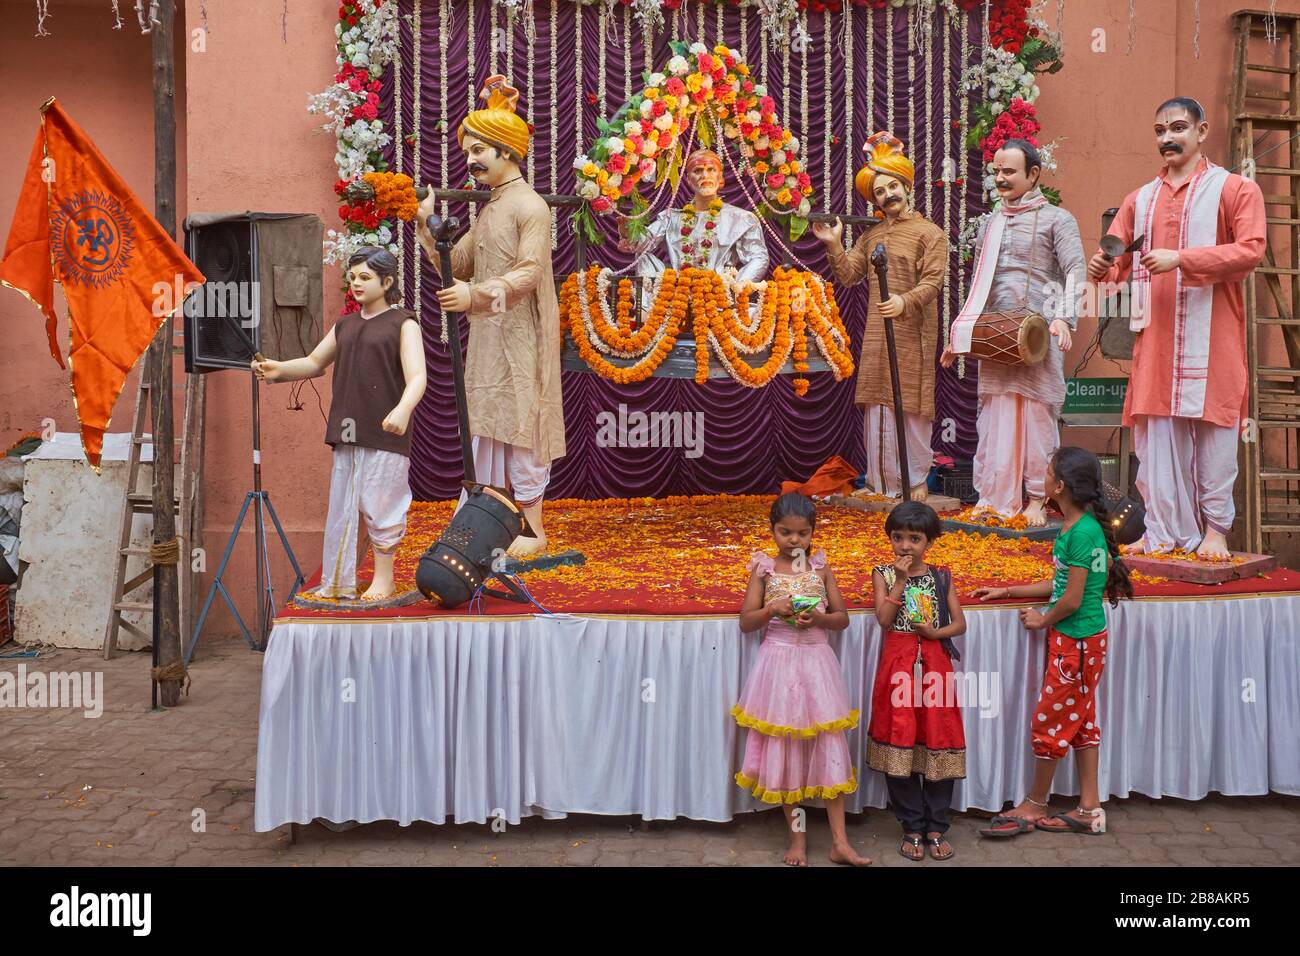 Célébrant l'anniversaire du légendaire guerrier-roi Shivaji Bhosle, une exposition montre une procession avec Shivaji porté dans un palanquin; Mumbai, Inde Banque D'Images